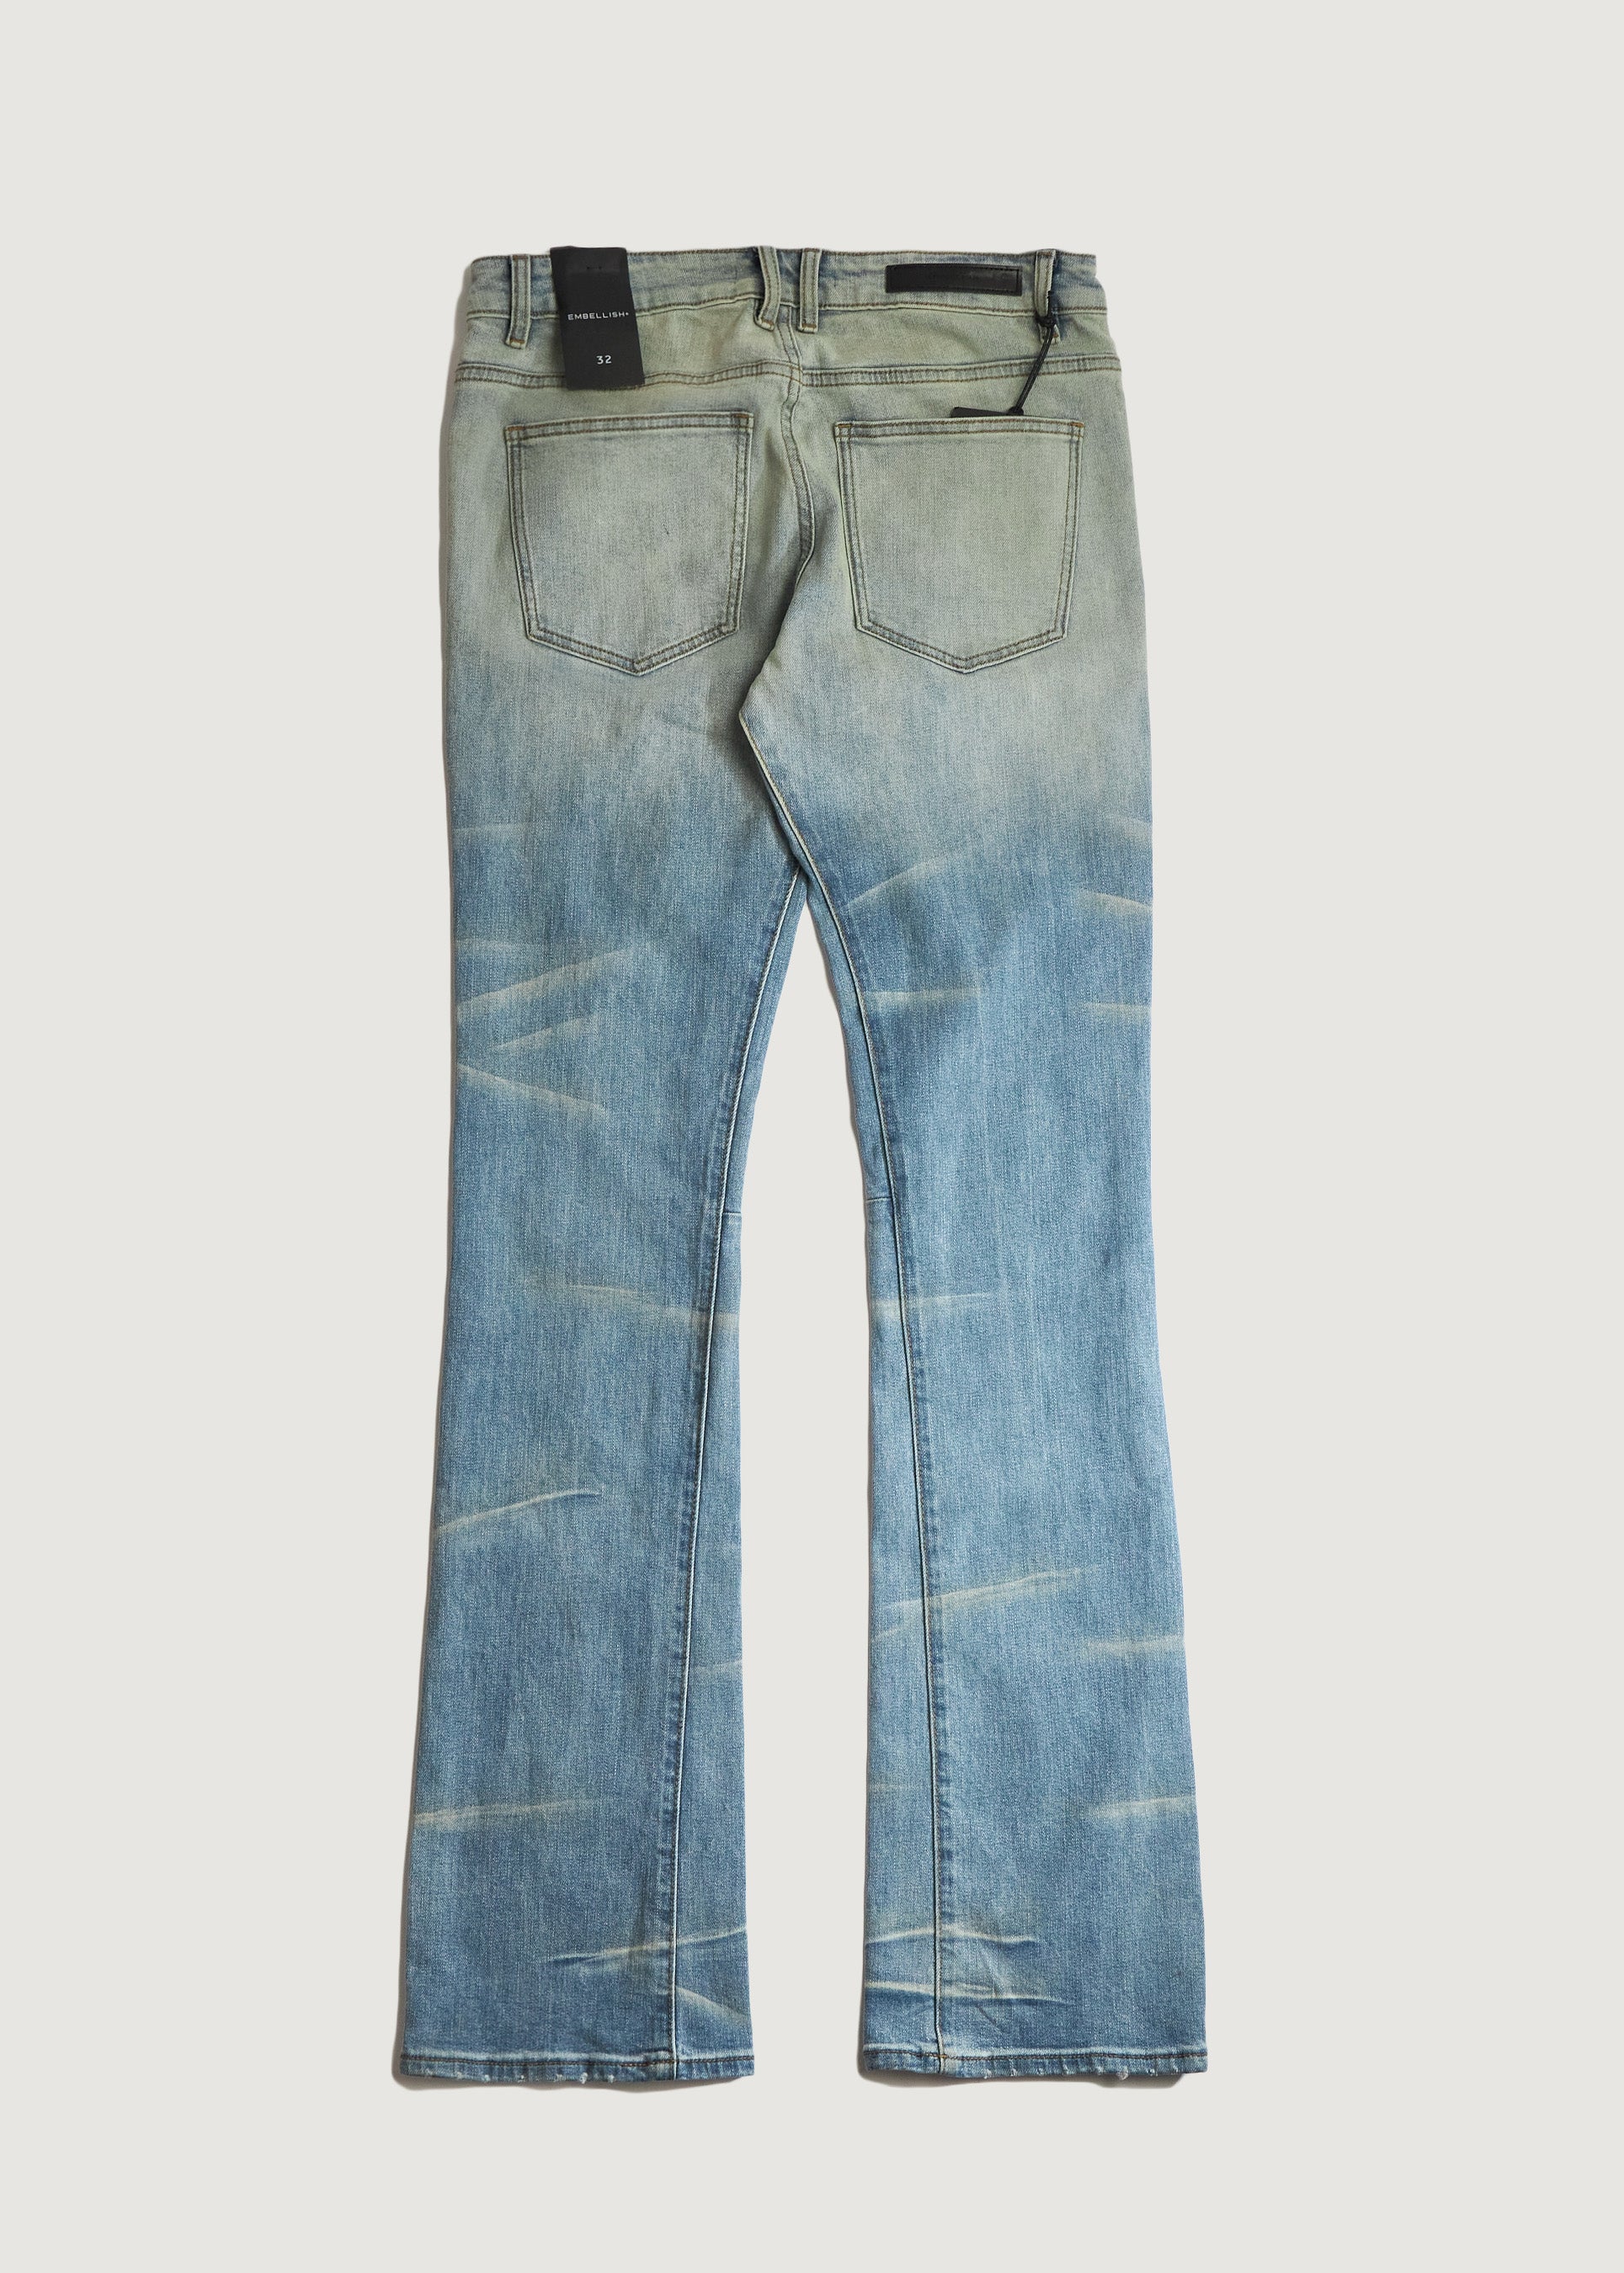 激安通販 prod mass no - jeans 02''GLEAM''Flared デニム/ジーンズ